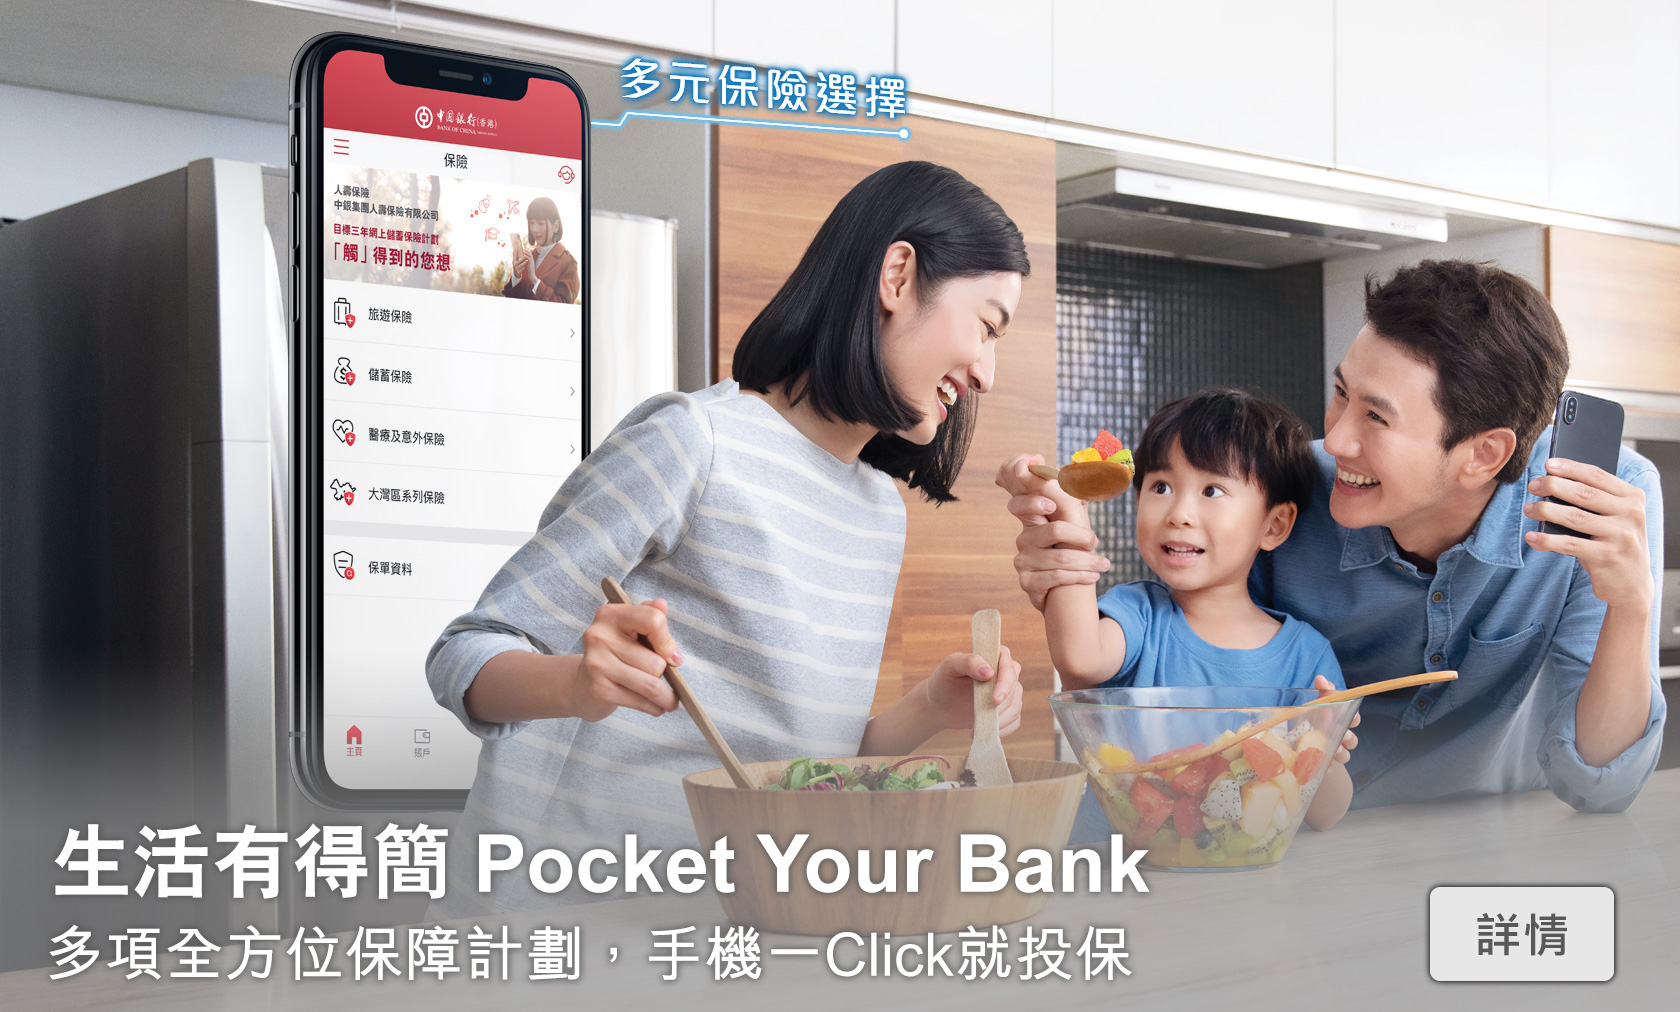 生活有得簡 Pocket Your Bank
        多項全方位保障計劃，手機一Click就投保